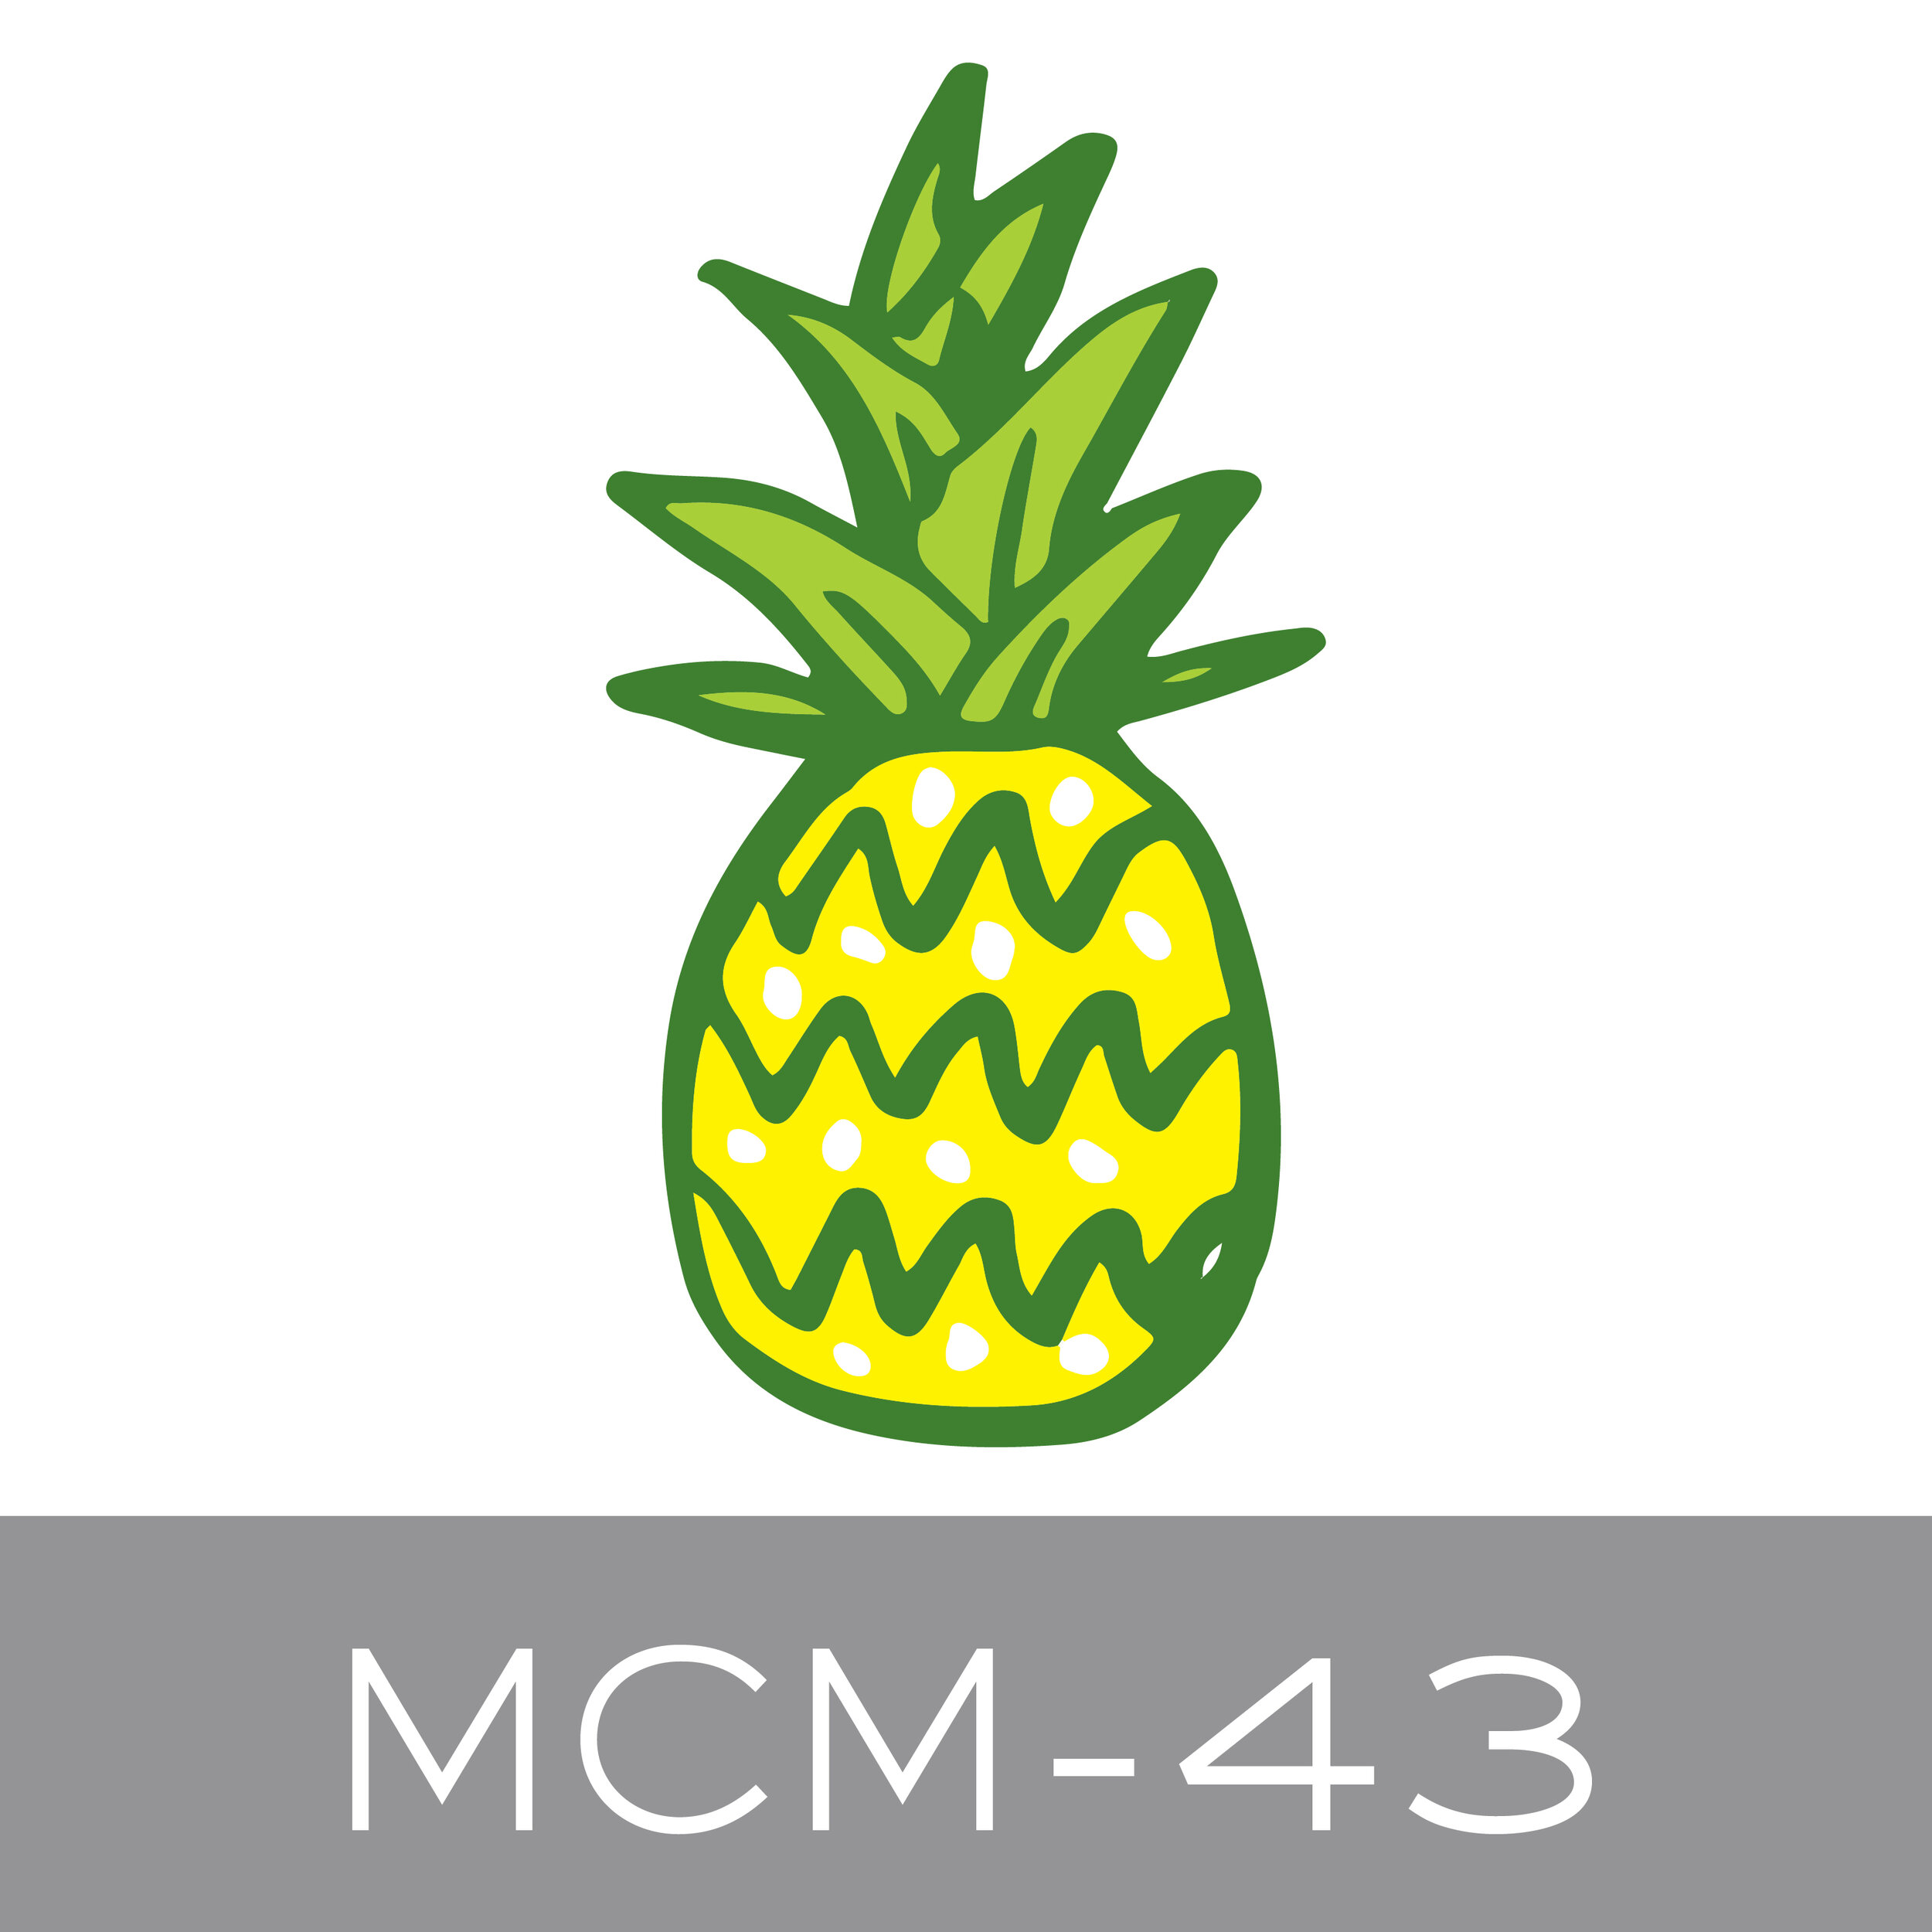 MCM-43.jpg